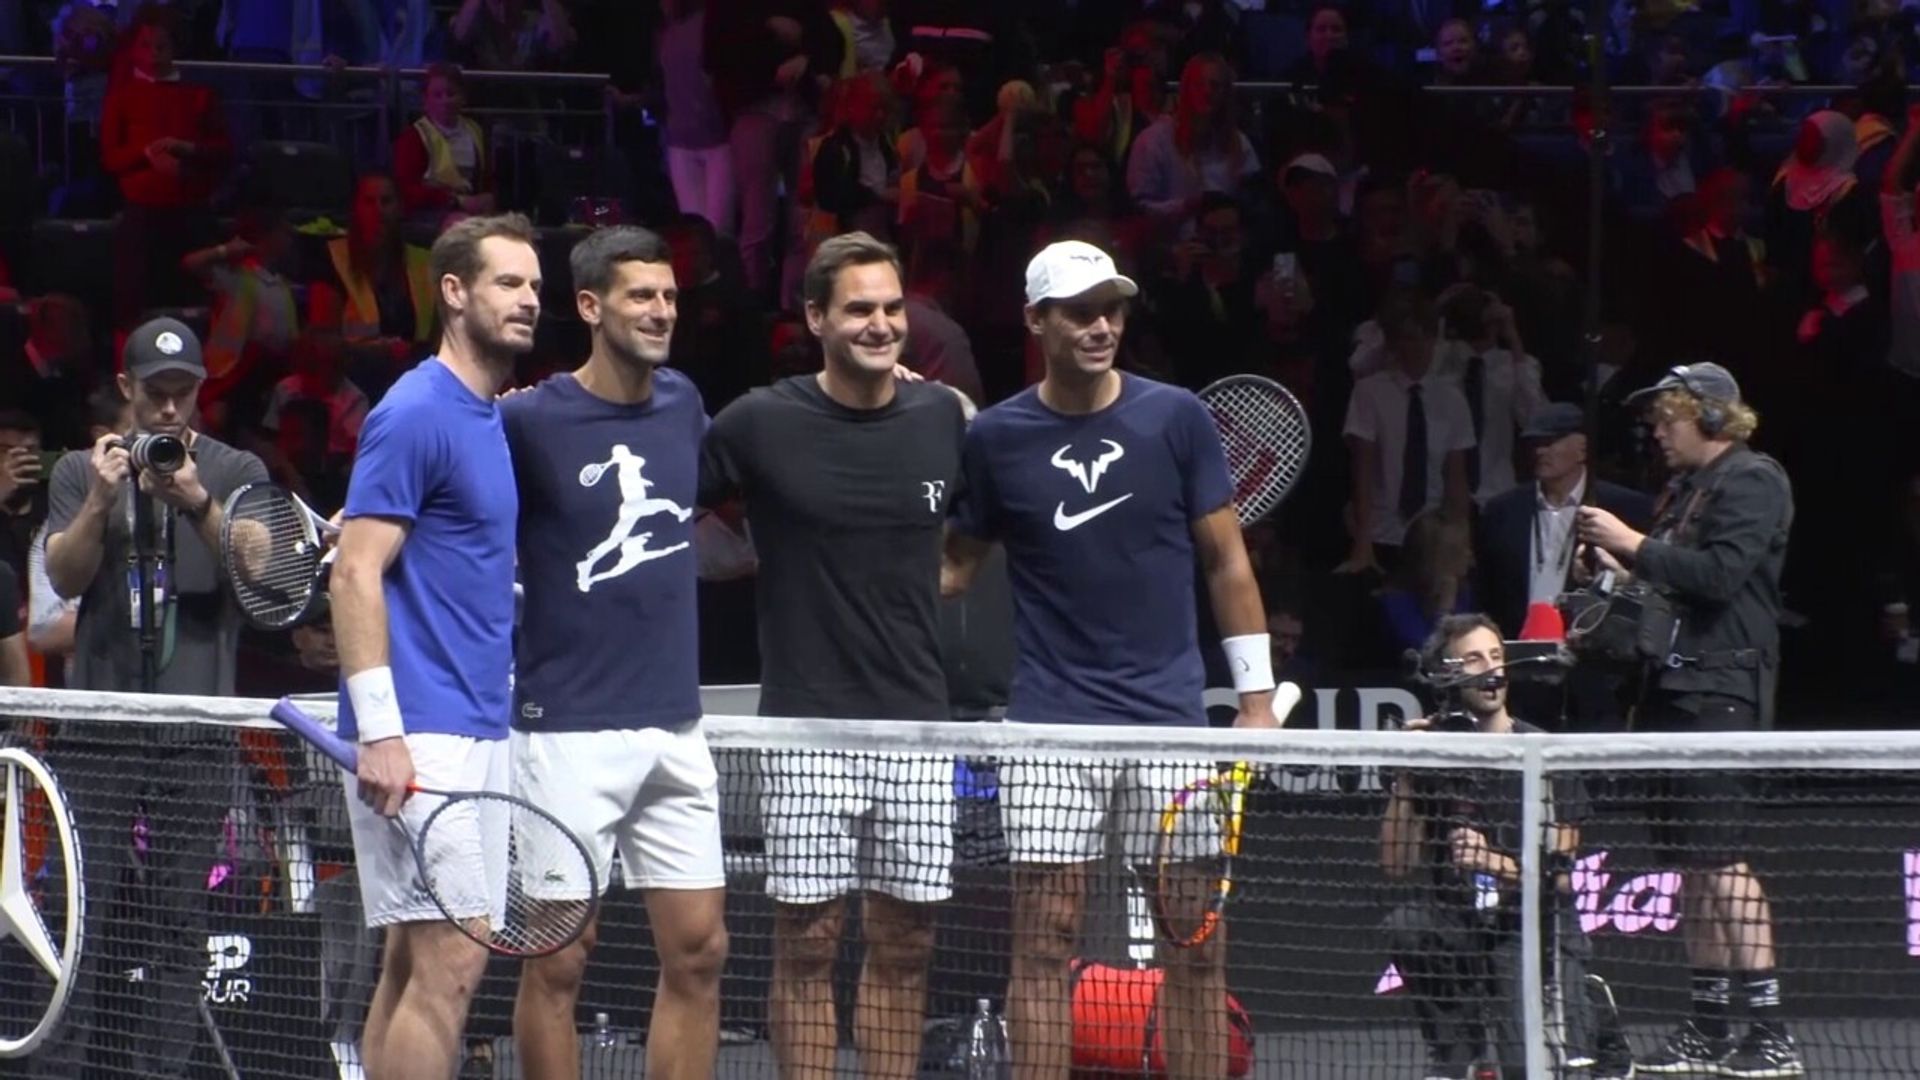 Tennis' 'Big Four' reunite